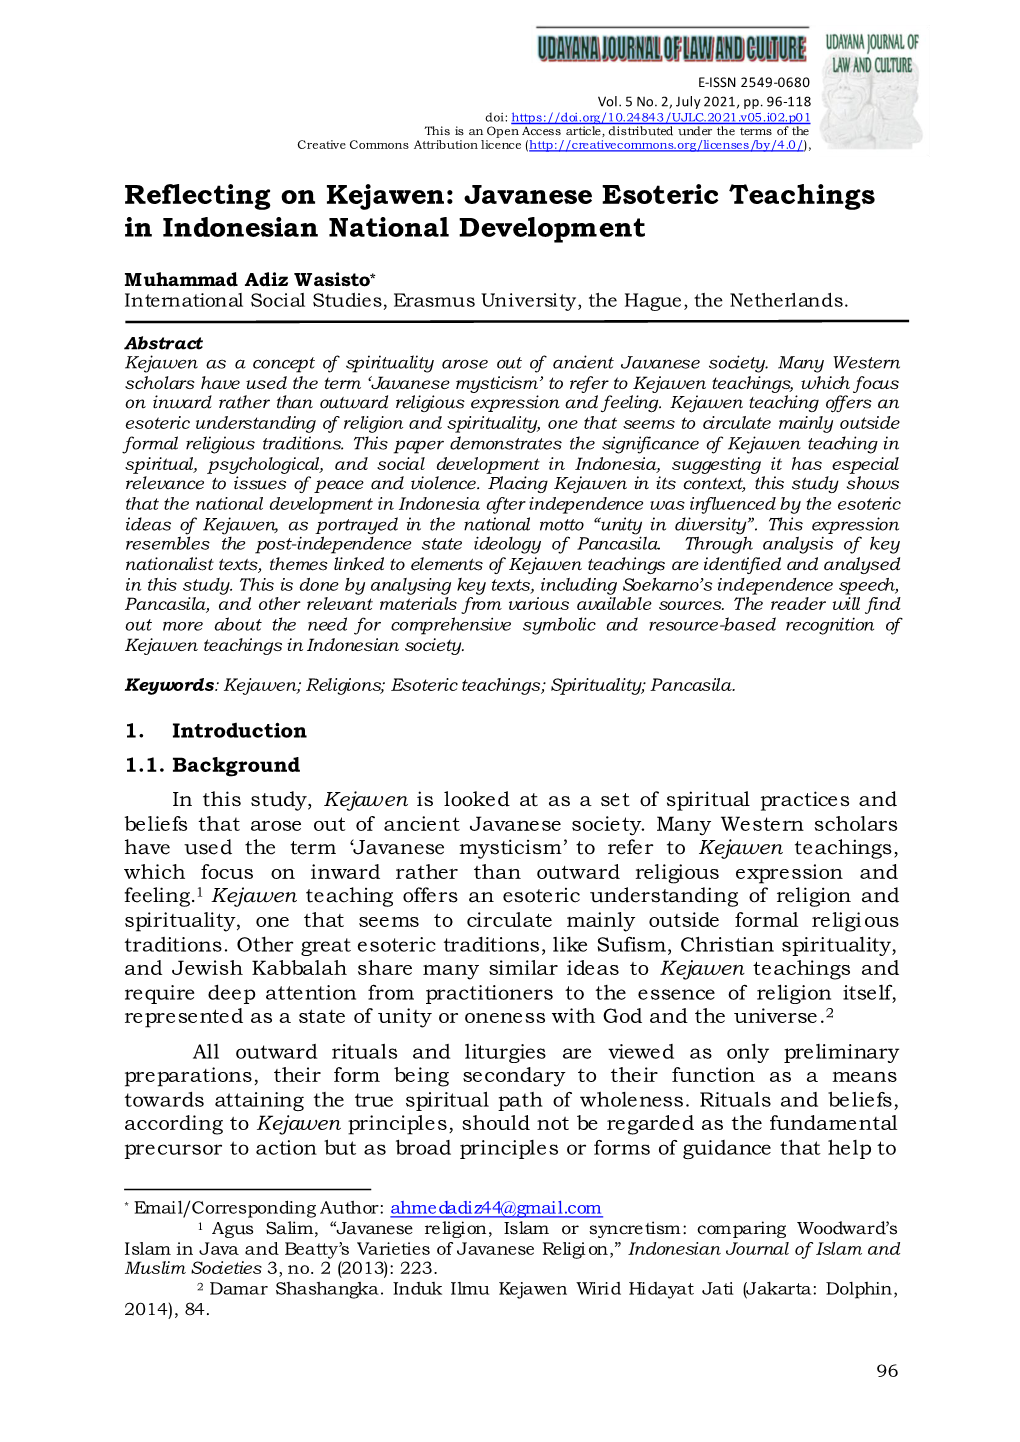 Reflecting on Kejawen: Javanese Esoteric Teachings in Indonesian National Development